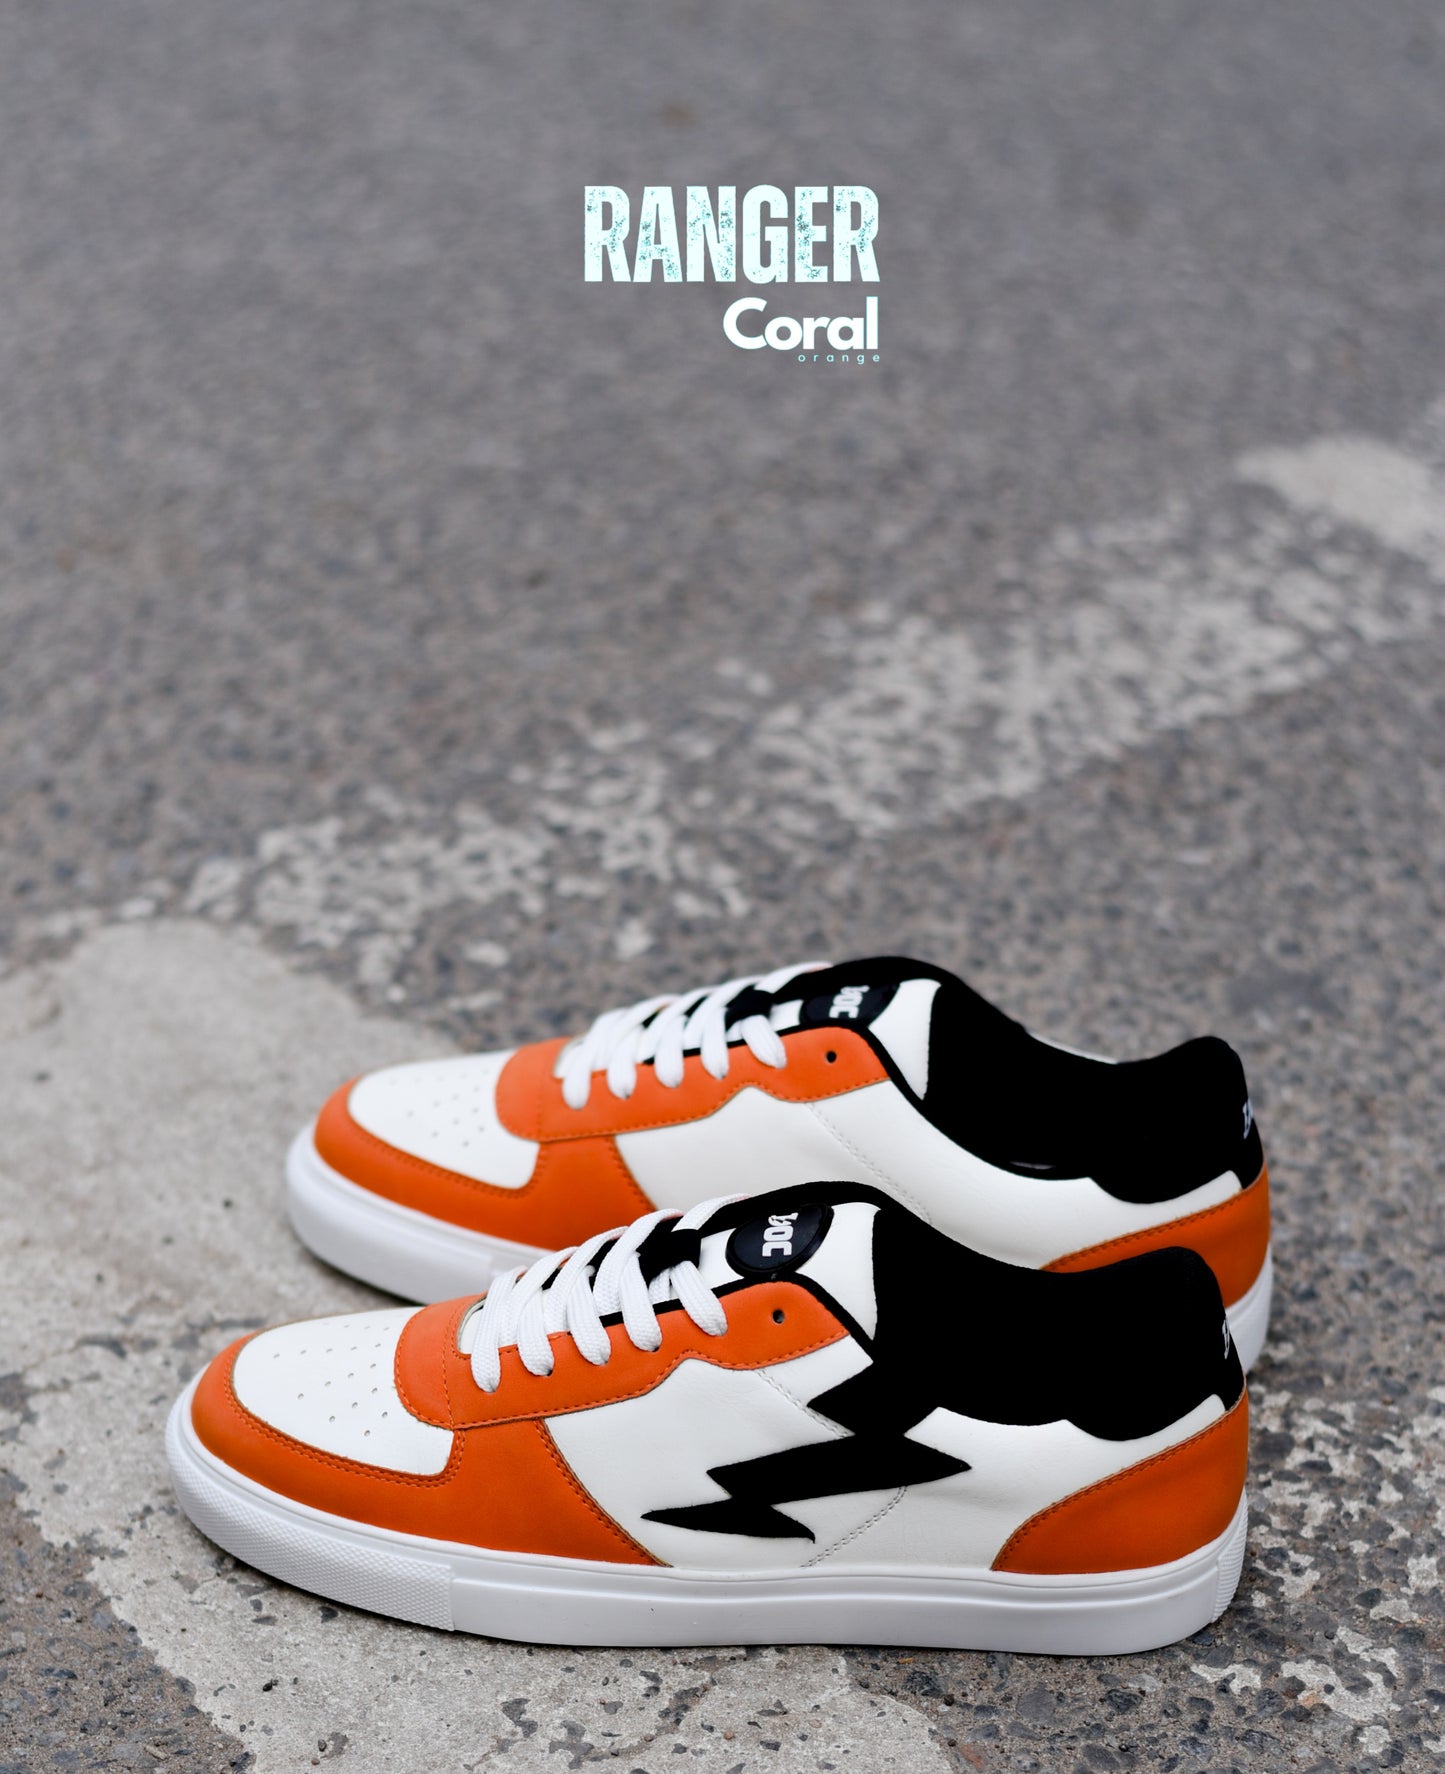 Ranger LT / Coral Orange